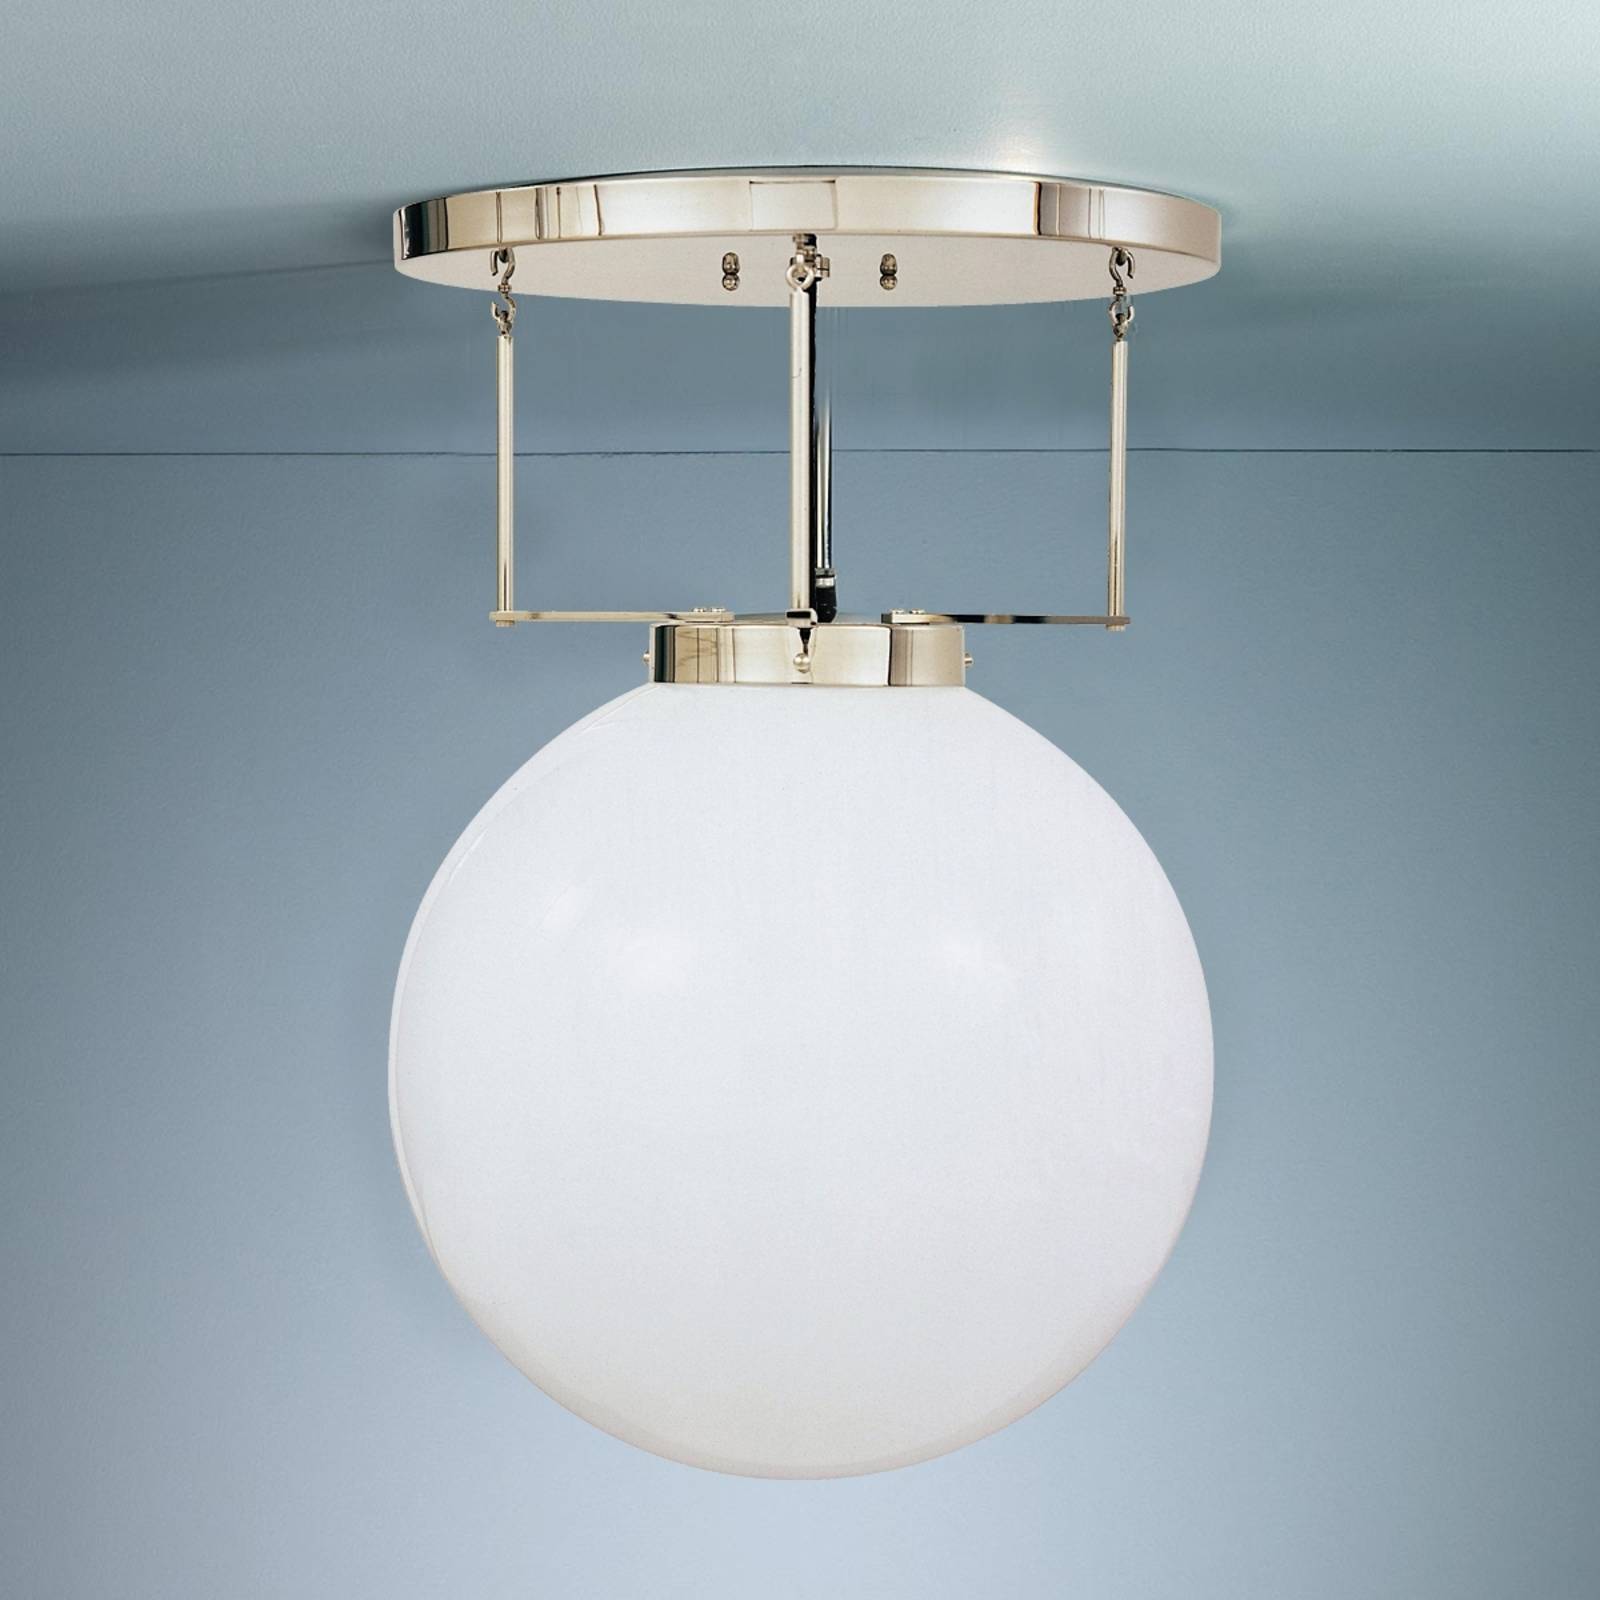 Lampa sufitowa w stylu Bauhaus 40 cm